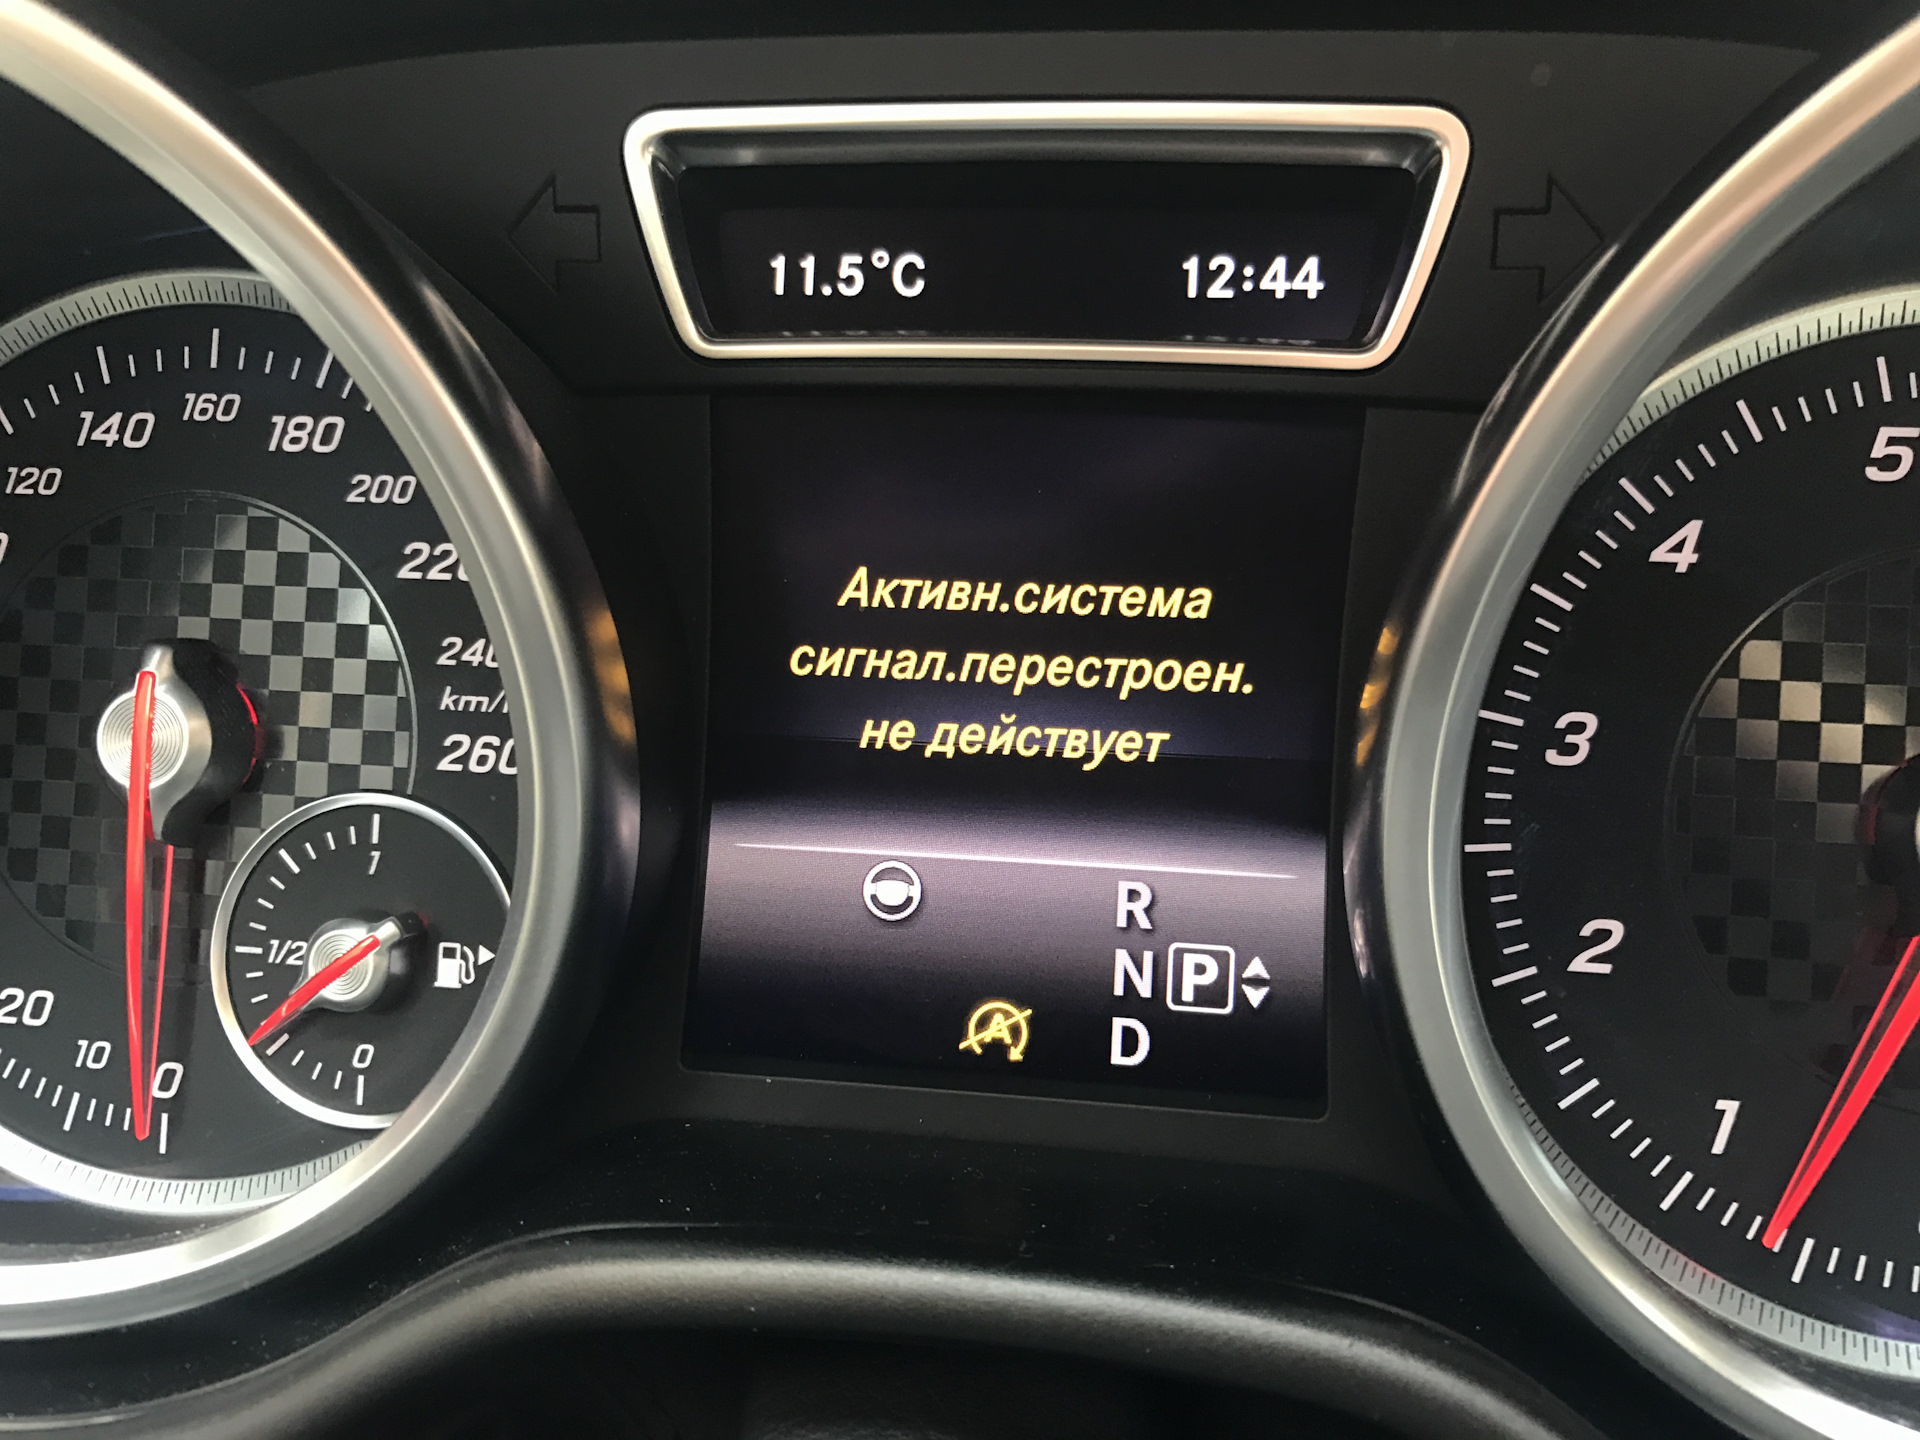 Опция выключена. Mercedes Benz GLE 2016 приборная панель. Бортовой компьютер w205. Цифровой дисплей на Мерседес w166. Диагностический прибор Мерседес gl 350 дизель.